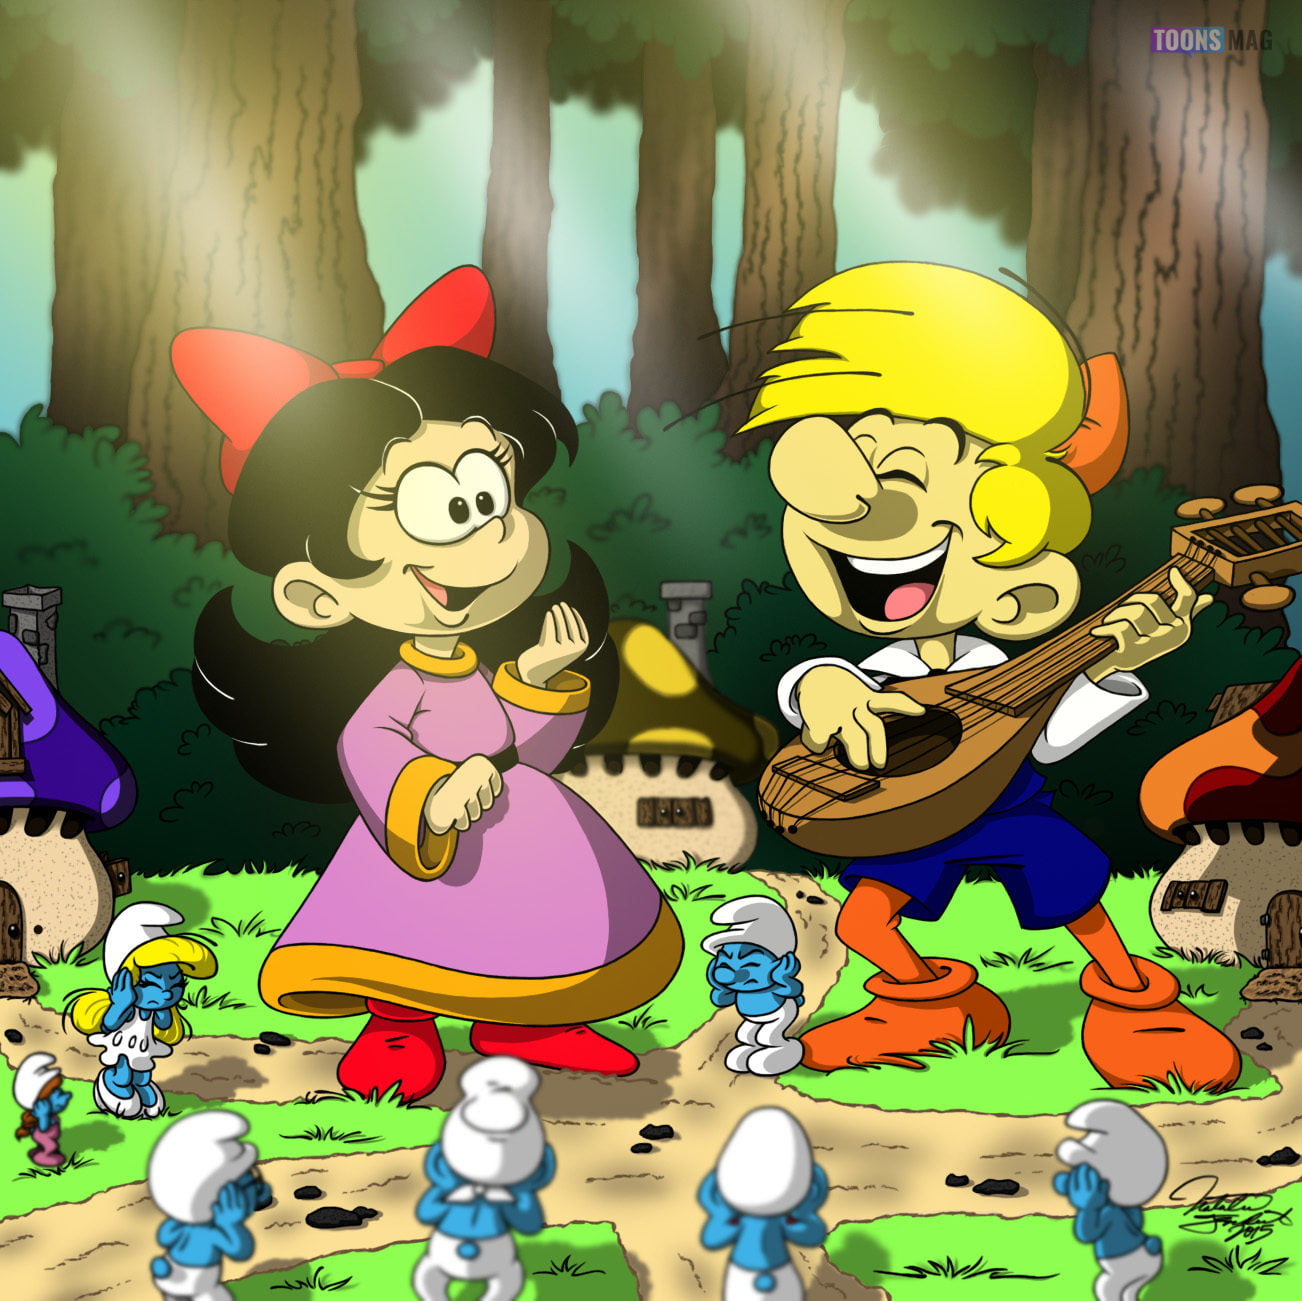 NOBODY SMURF • Full Episode • The Smurfs • Cartoons For Kids 